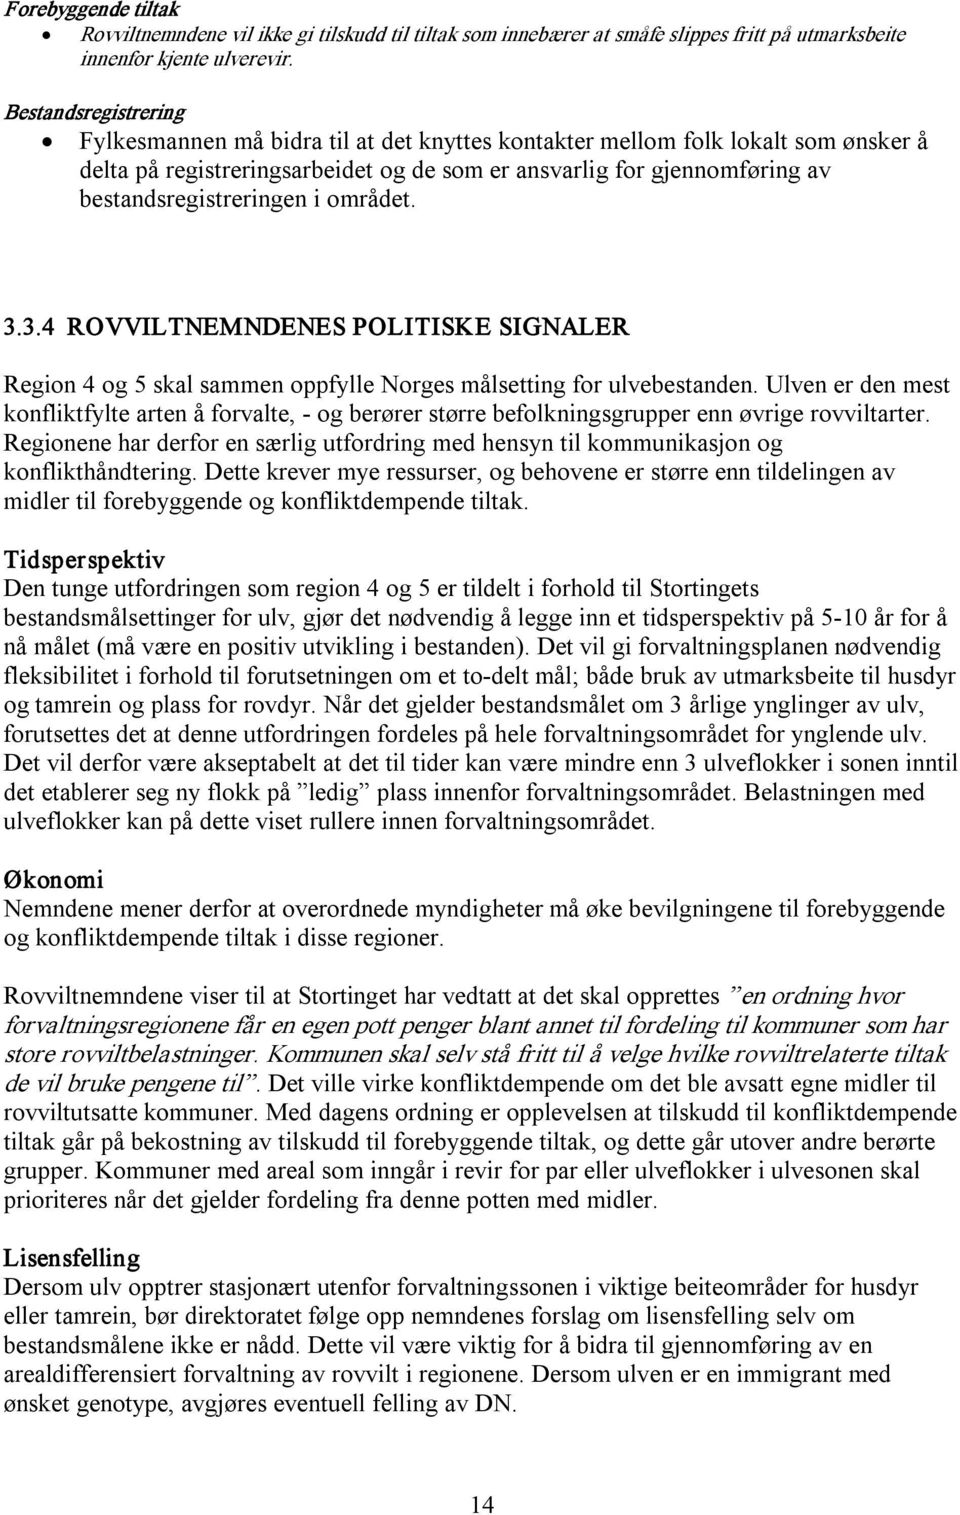 bestandsregistreringen i området. 3.3.4 ROVVILTNEMNDENES POLITISKE SIGNALER Region 4 og 5 skal sammen oppfylle Norges målsetting for ulvebestanden.